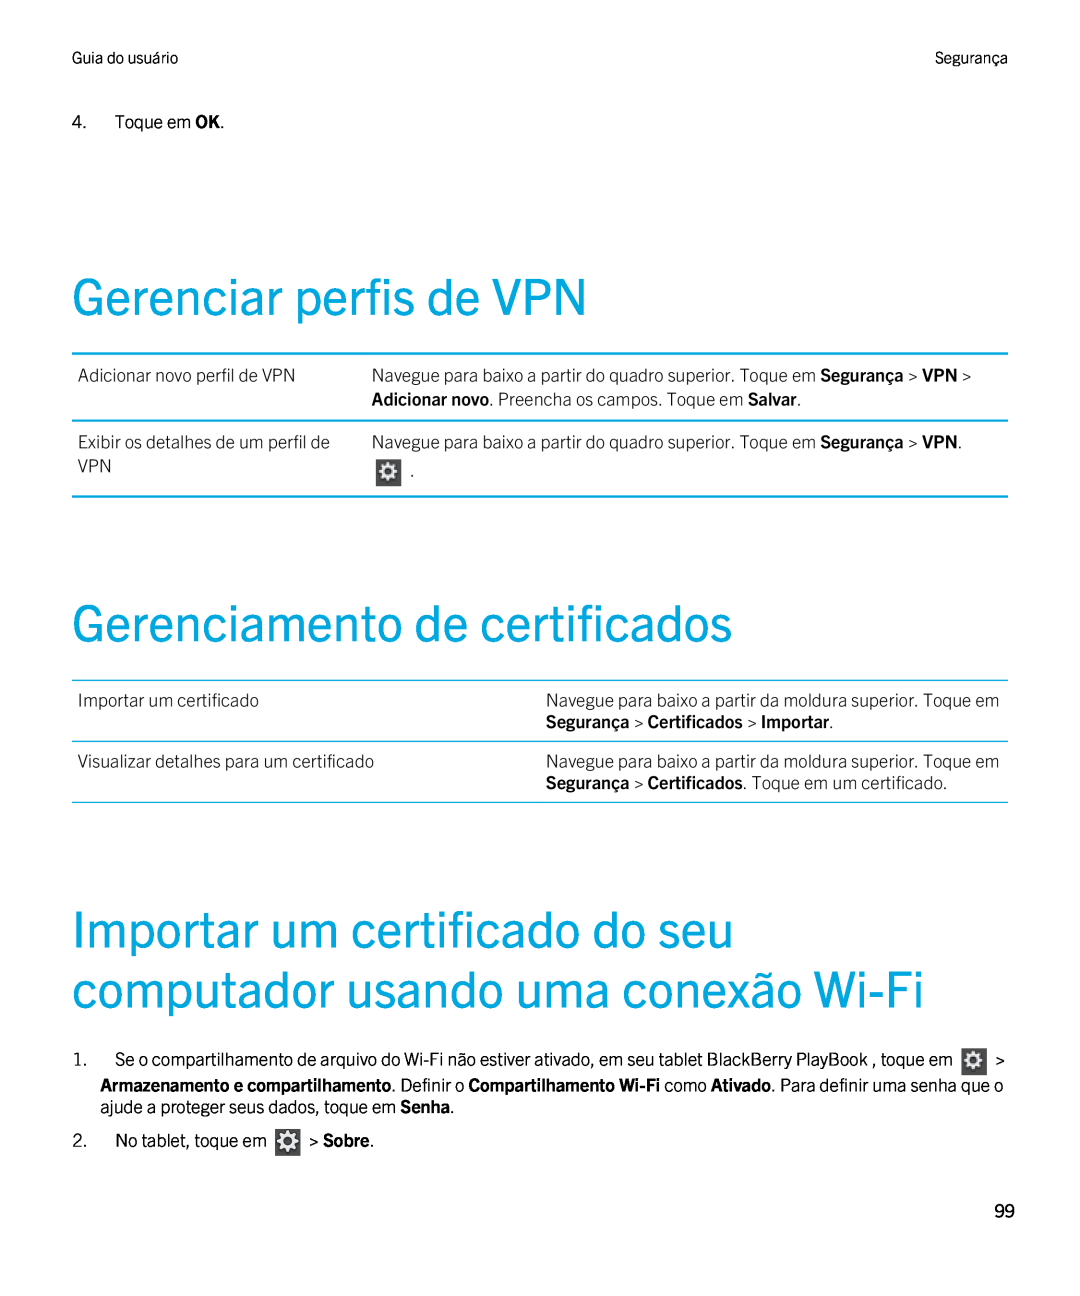 Blackberry 2.0.1 manual Gerenciar perfis de VPN, Gerenciamento de certificados, Segurança Certificados Importar 